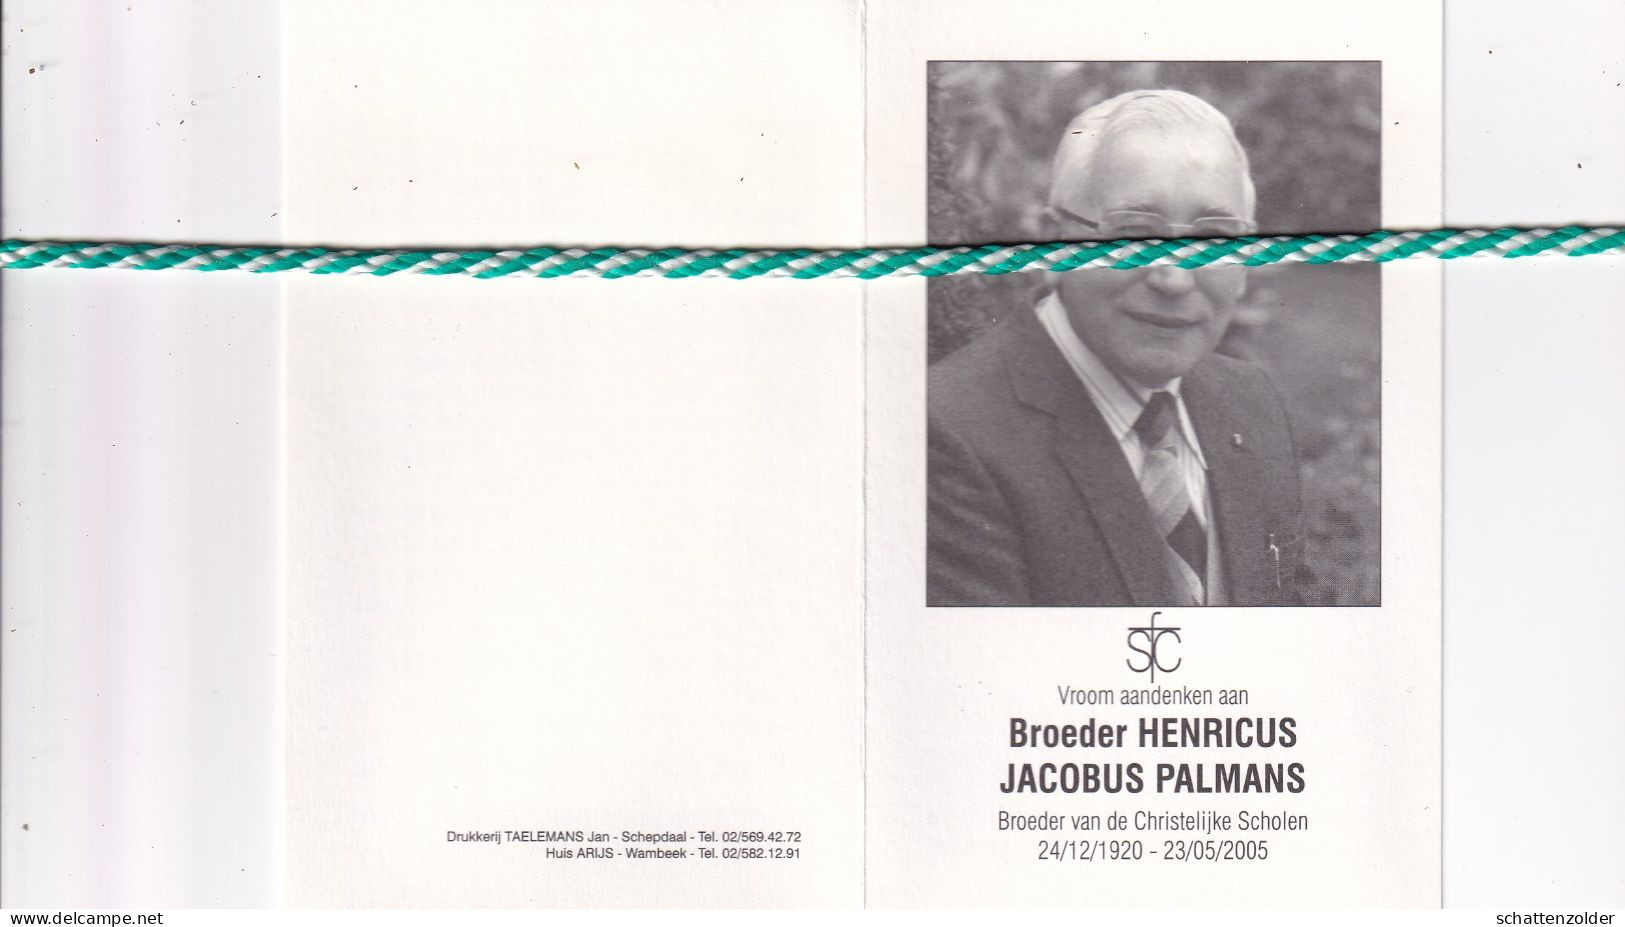 Broeder Henricus (Jacobus Palmans), Hamont 1920, Groot-Bijgaarden 2005. Foto - Décès